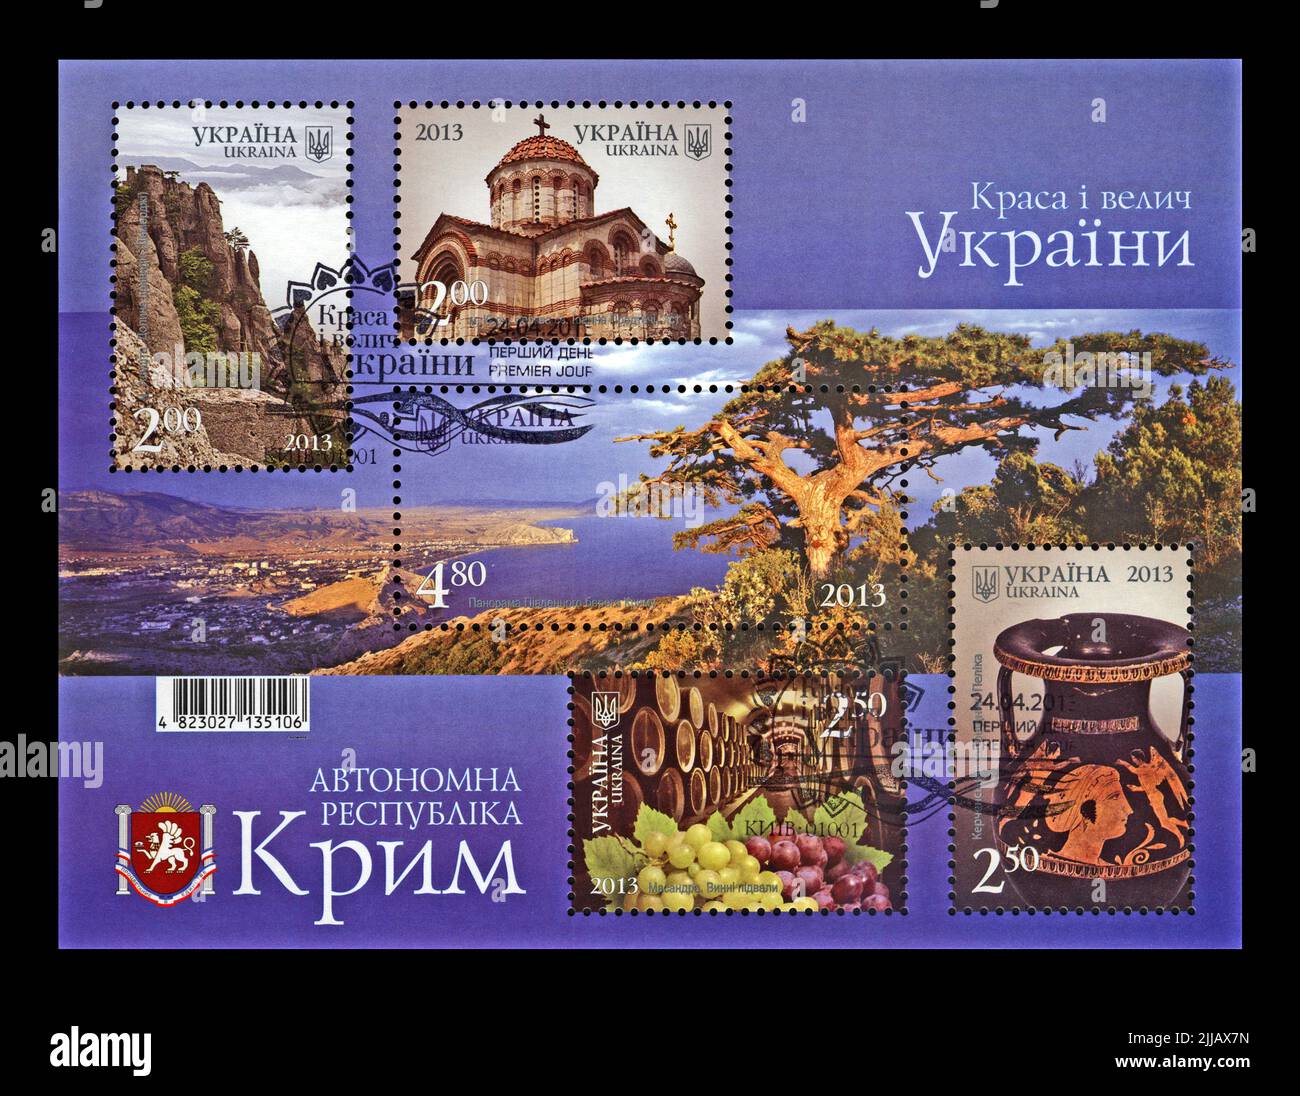 Regione della Crimea luoghi famosi, circa 2013. Timbro cancellato stampato in Ucraina. timbro postale vintage isolato su sfondo nero. Foto Stock